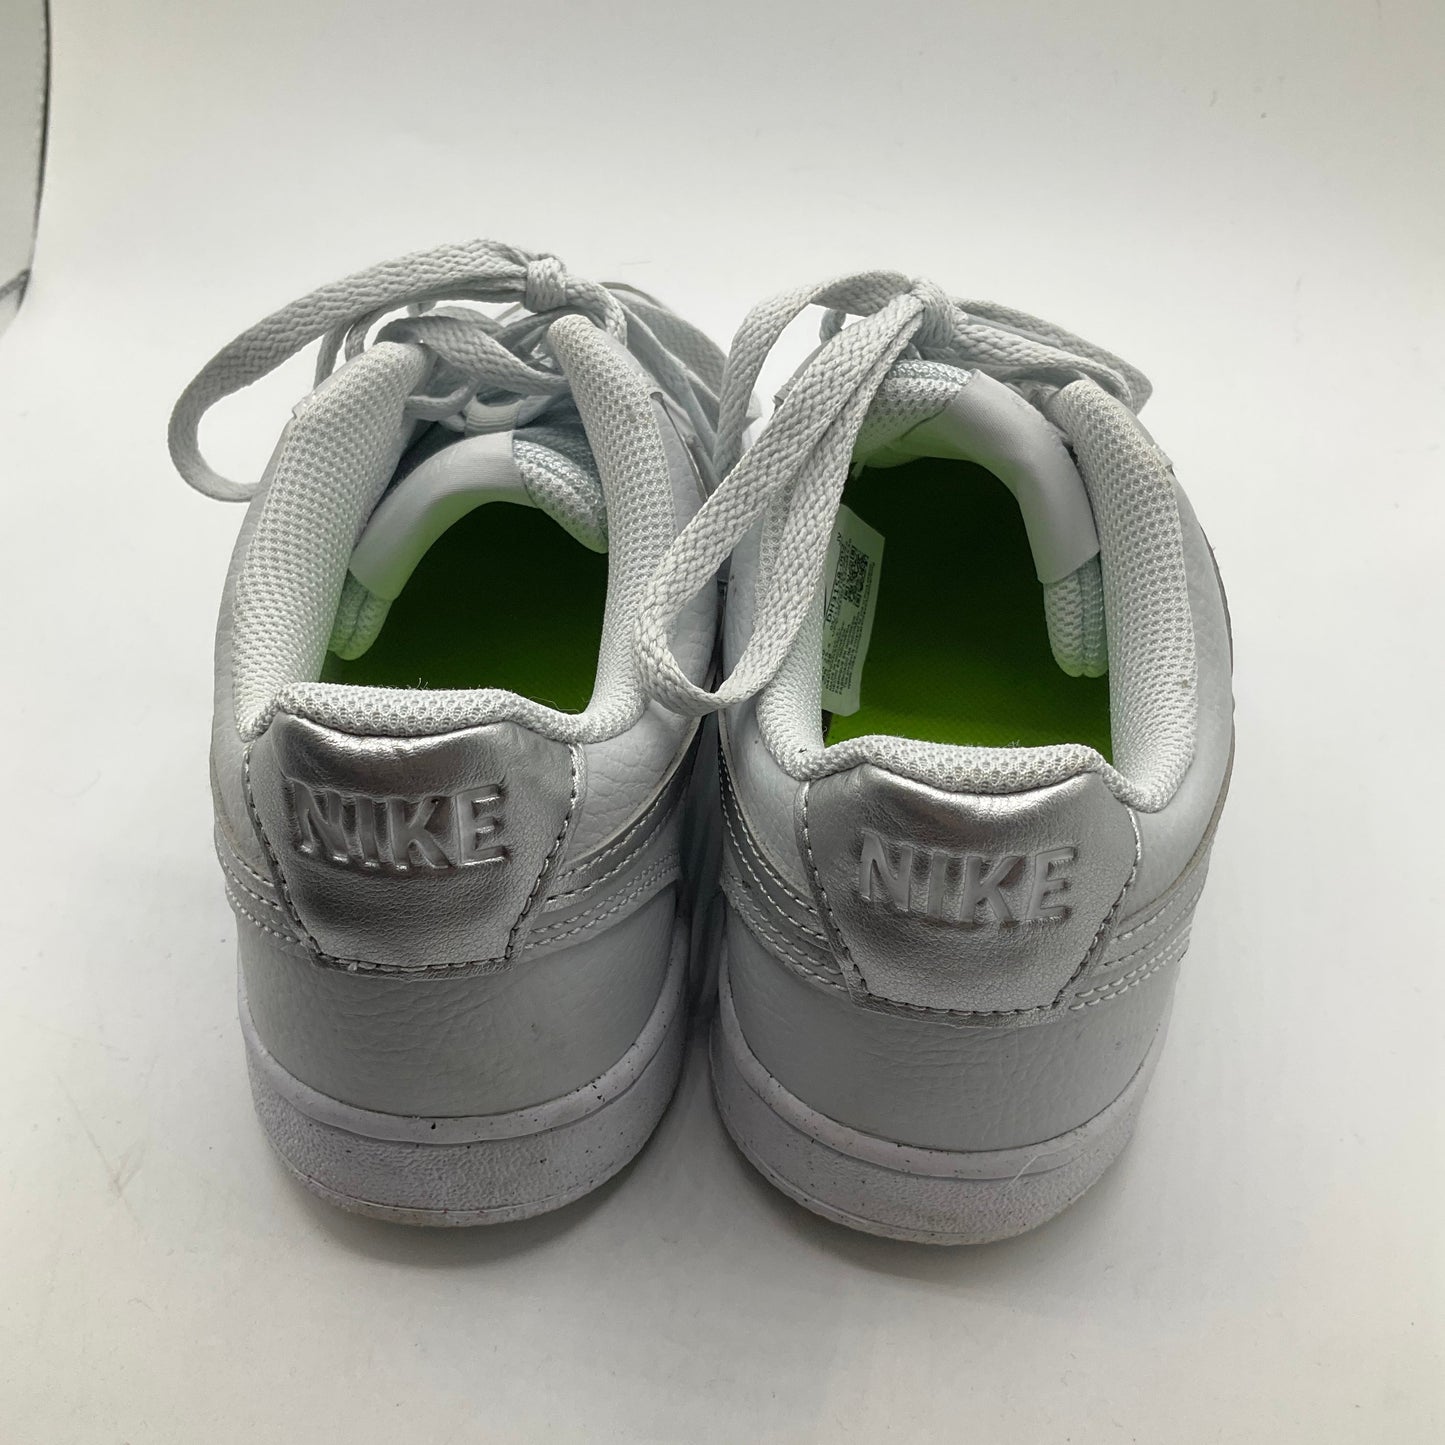 White Shoes Athletic Nike, Size 8.5